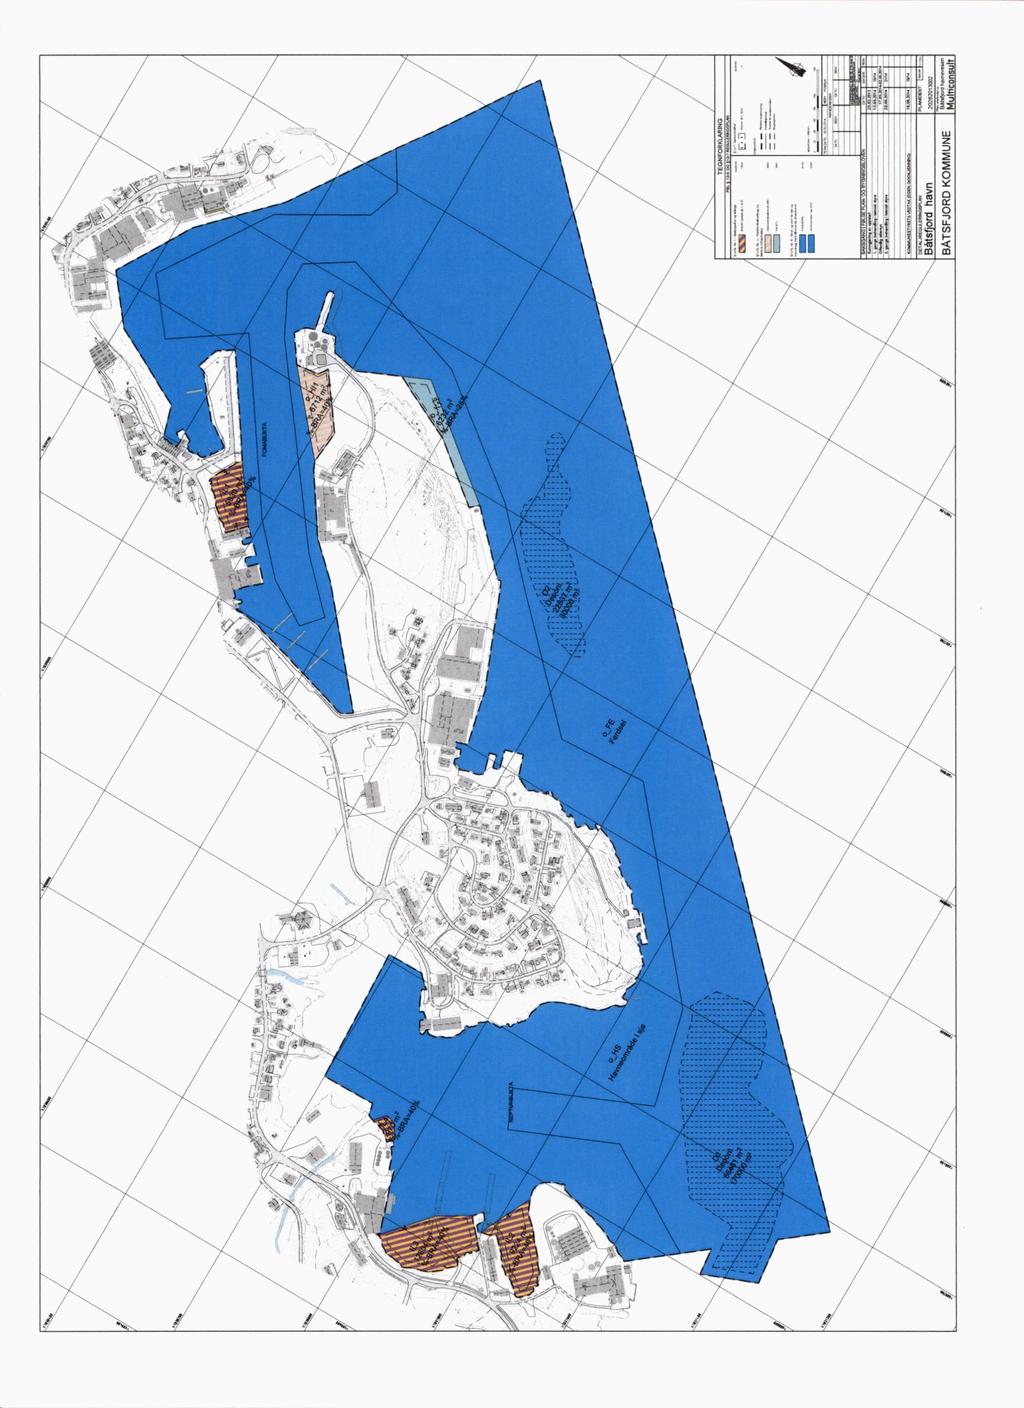 Mudringsplan Mudring ned til vel 9 meter - Ytre havn / Sentrum - Indre havn / Neptunbukta - Fjorden / Dampskipskaia